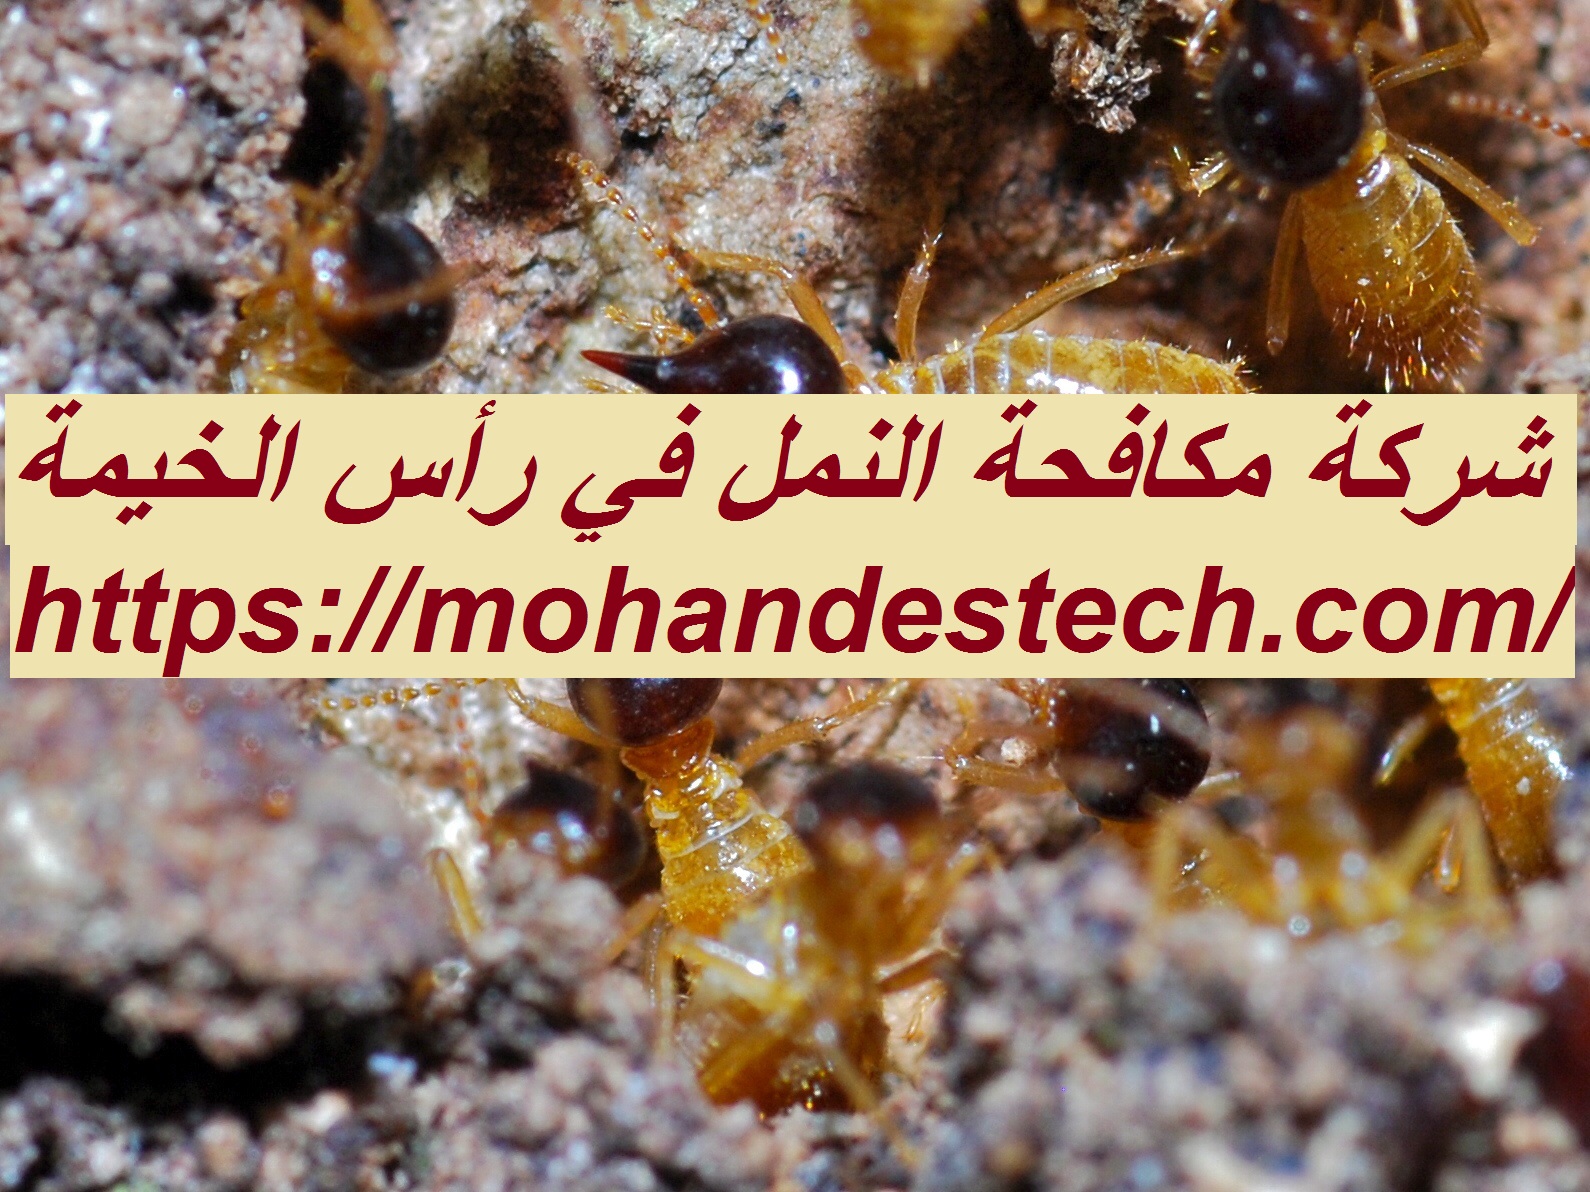 شركة مكافحة النمل في راس الخيمة |0522814040| مكافحة حشرات